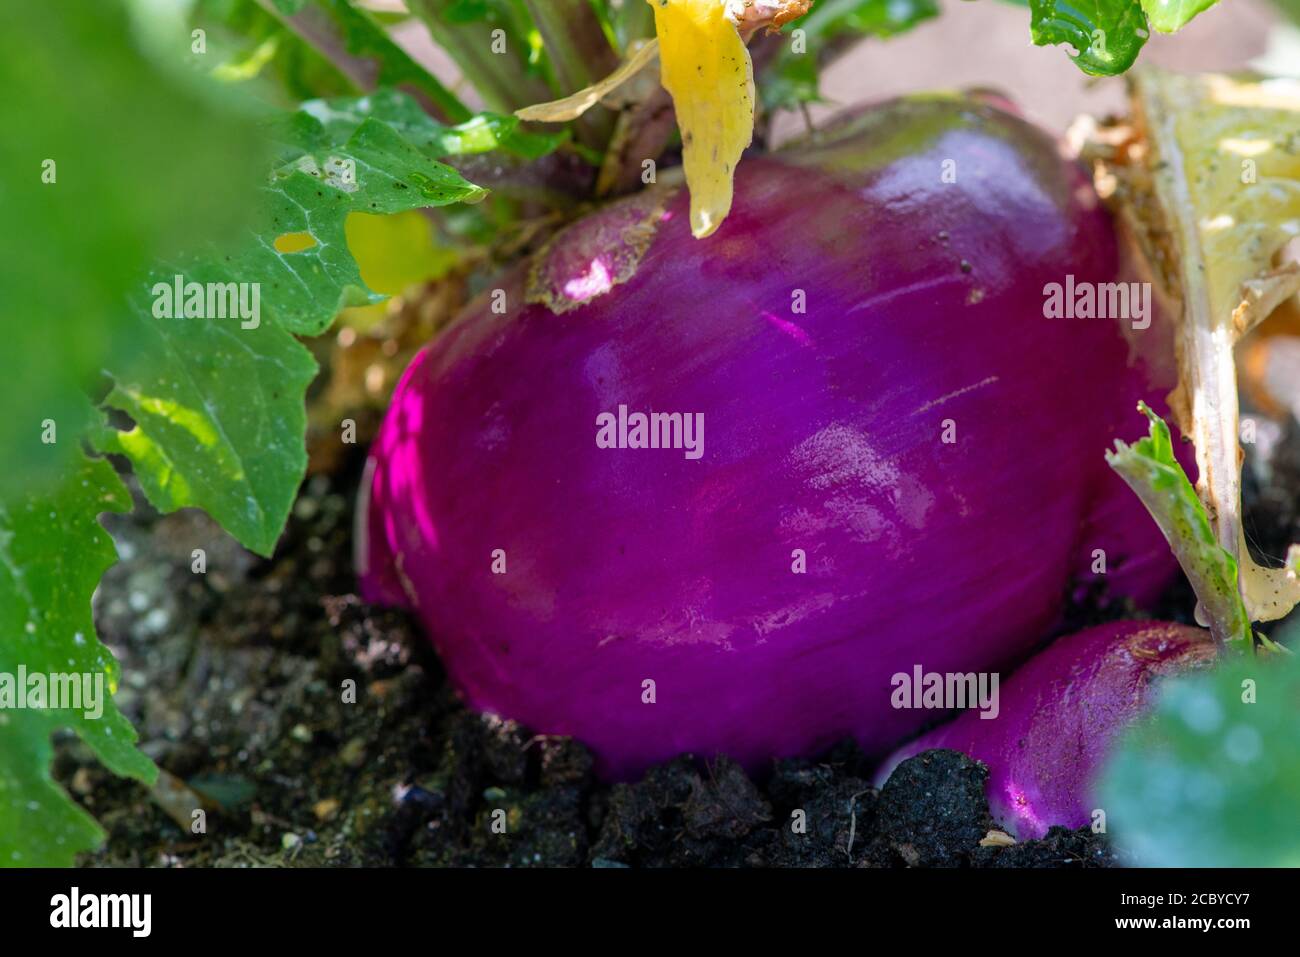 Una grande rapa viola rotonda o rutabaga piantato in un campo di contadino. Il vegetale è bagnato con acqua piovana rendendo la pelle lucida. Foto Stock